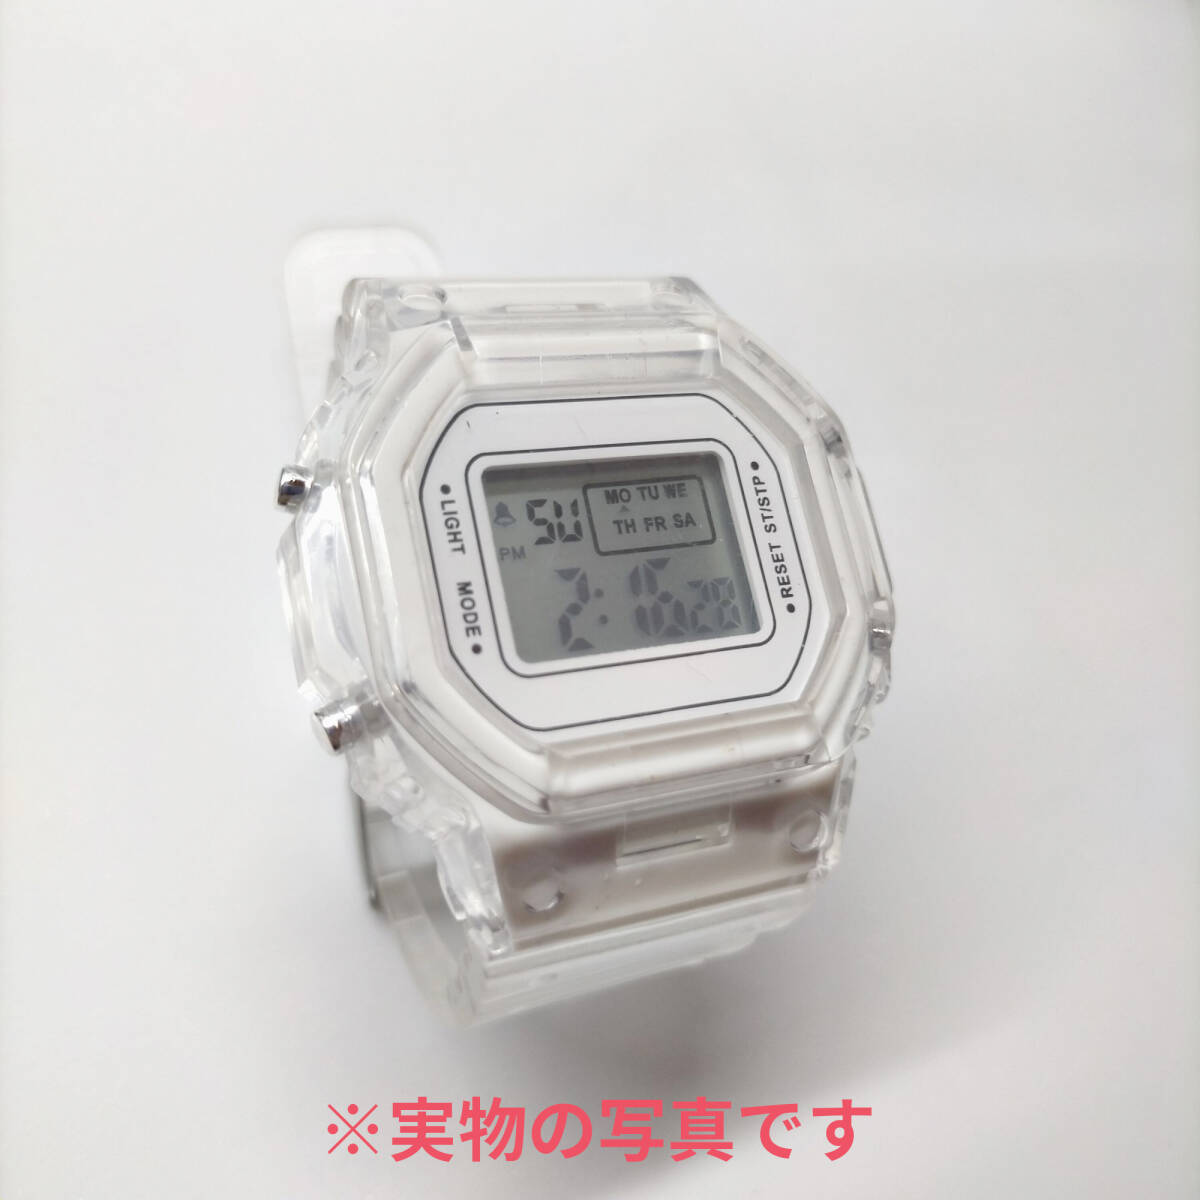 スケルトン防水軽量シンプルデザイン スポーツウォッチ デジタル腕時計レディース くすみカラー ホワイト白 (G-shockではありません)の画像2